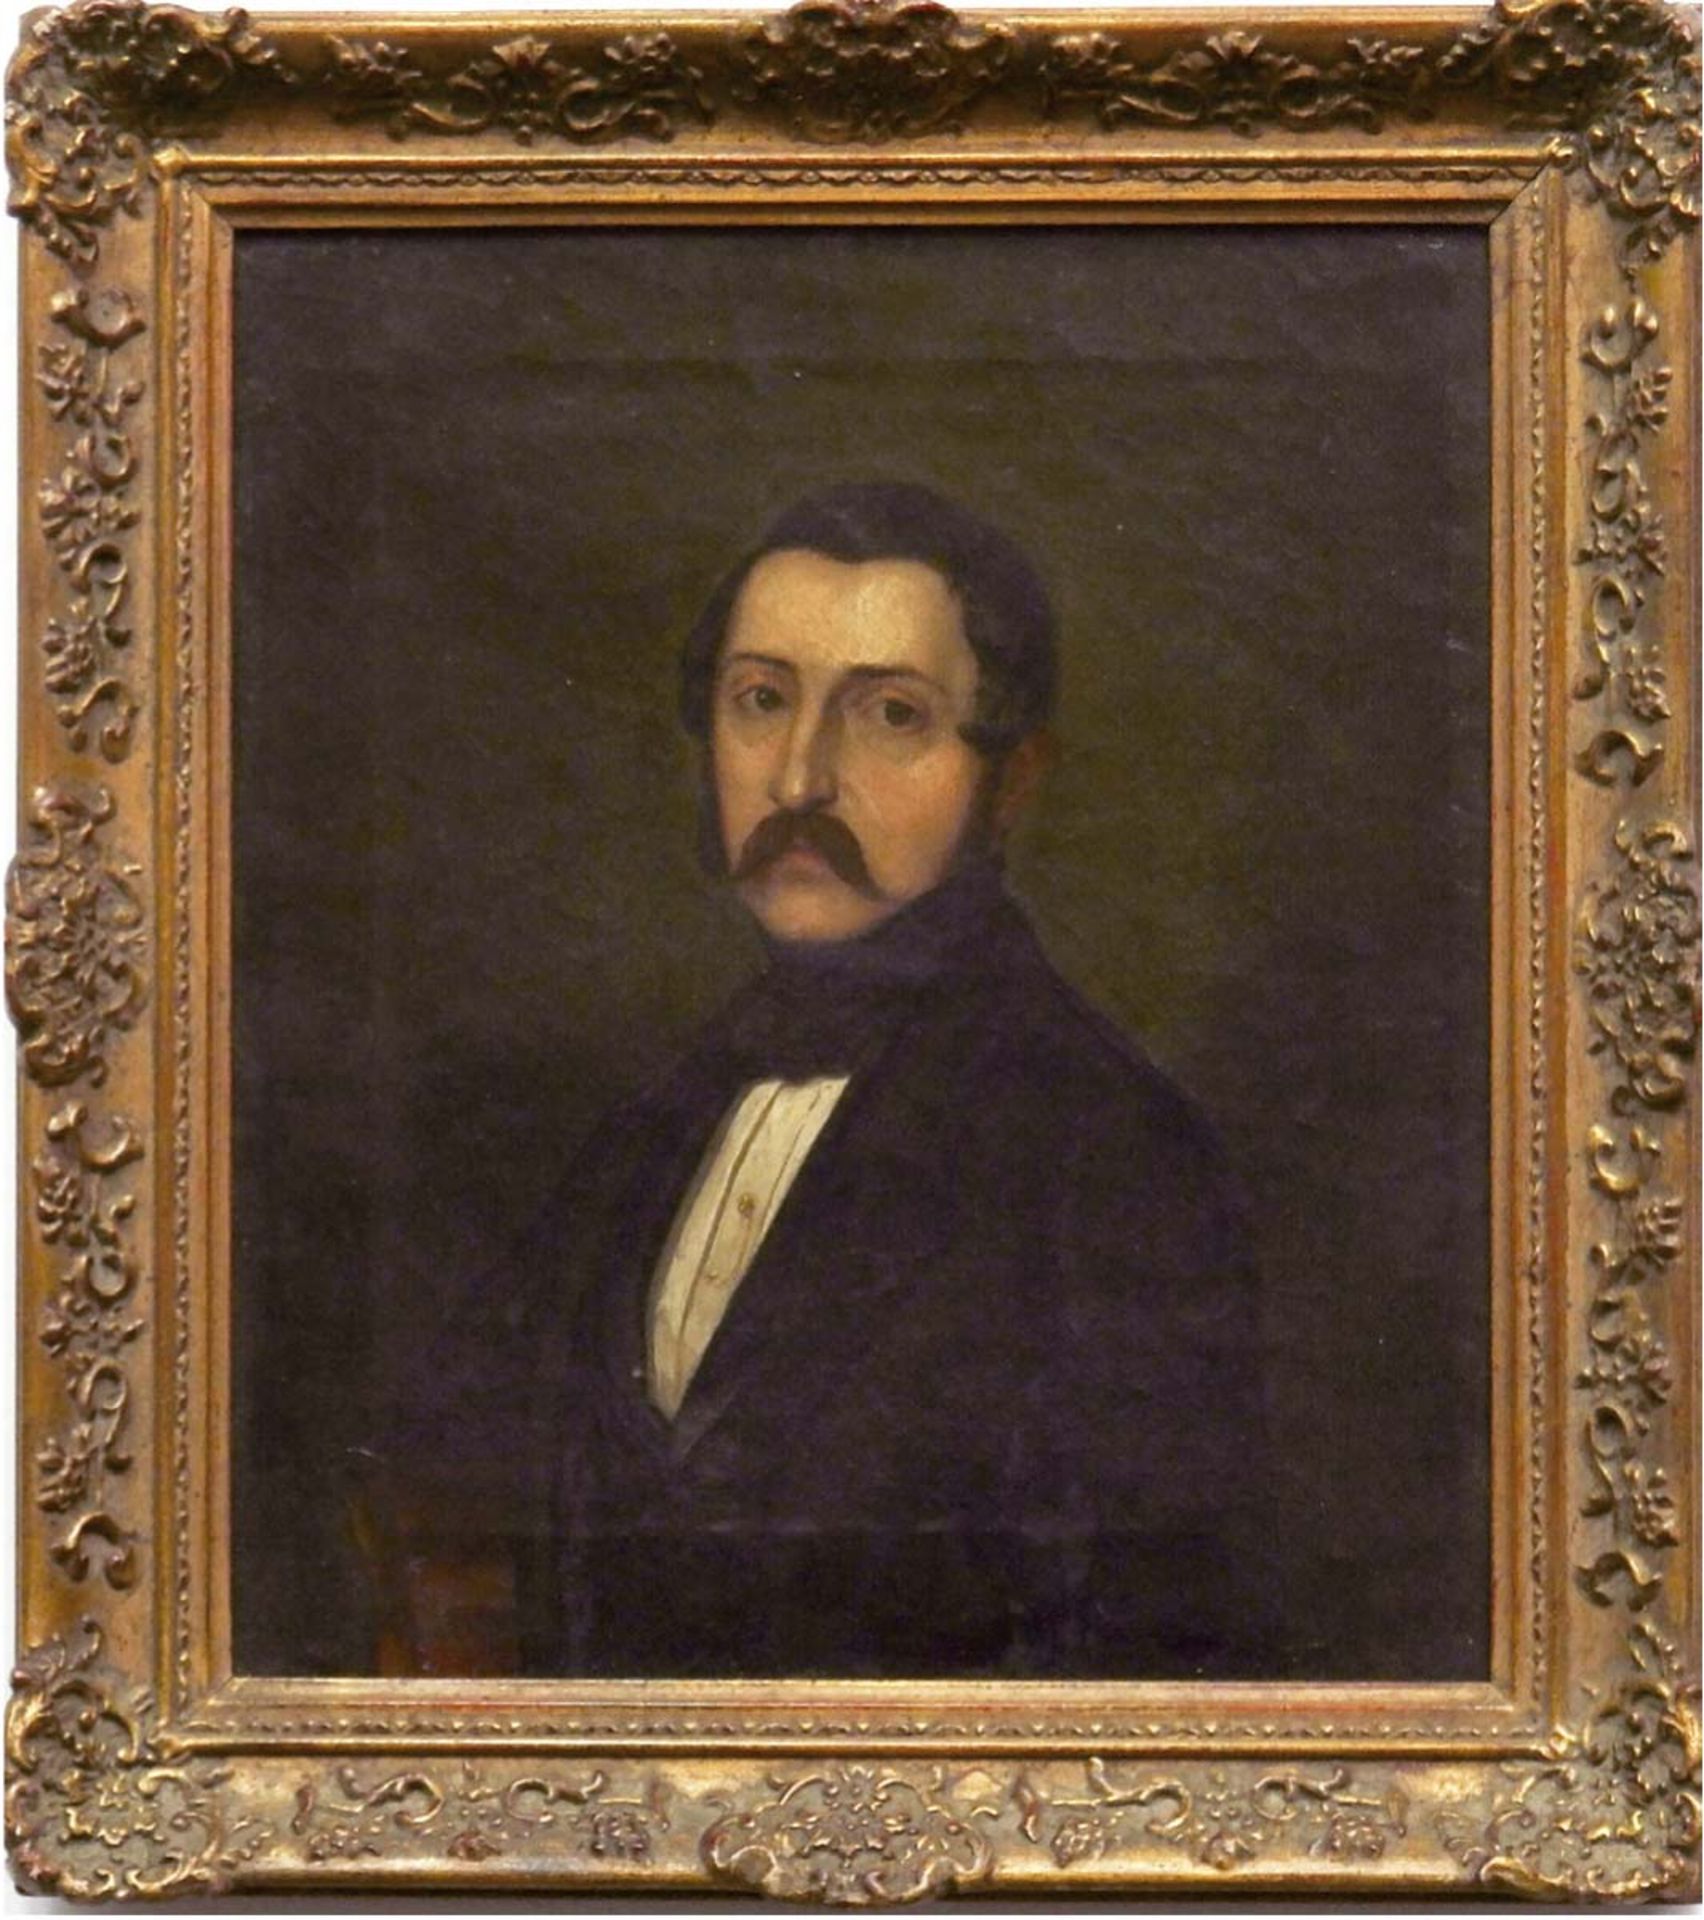 Porträtist 19. Jh. "Porträt eines Herren", Öl/Lw. unsign., 23x20 cm, Rahmen